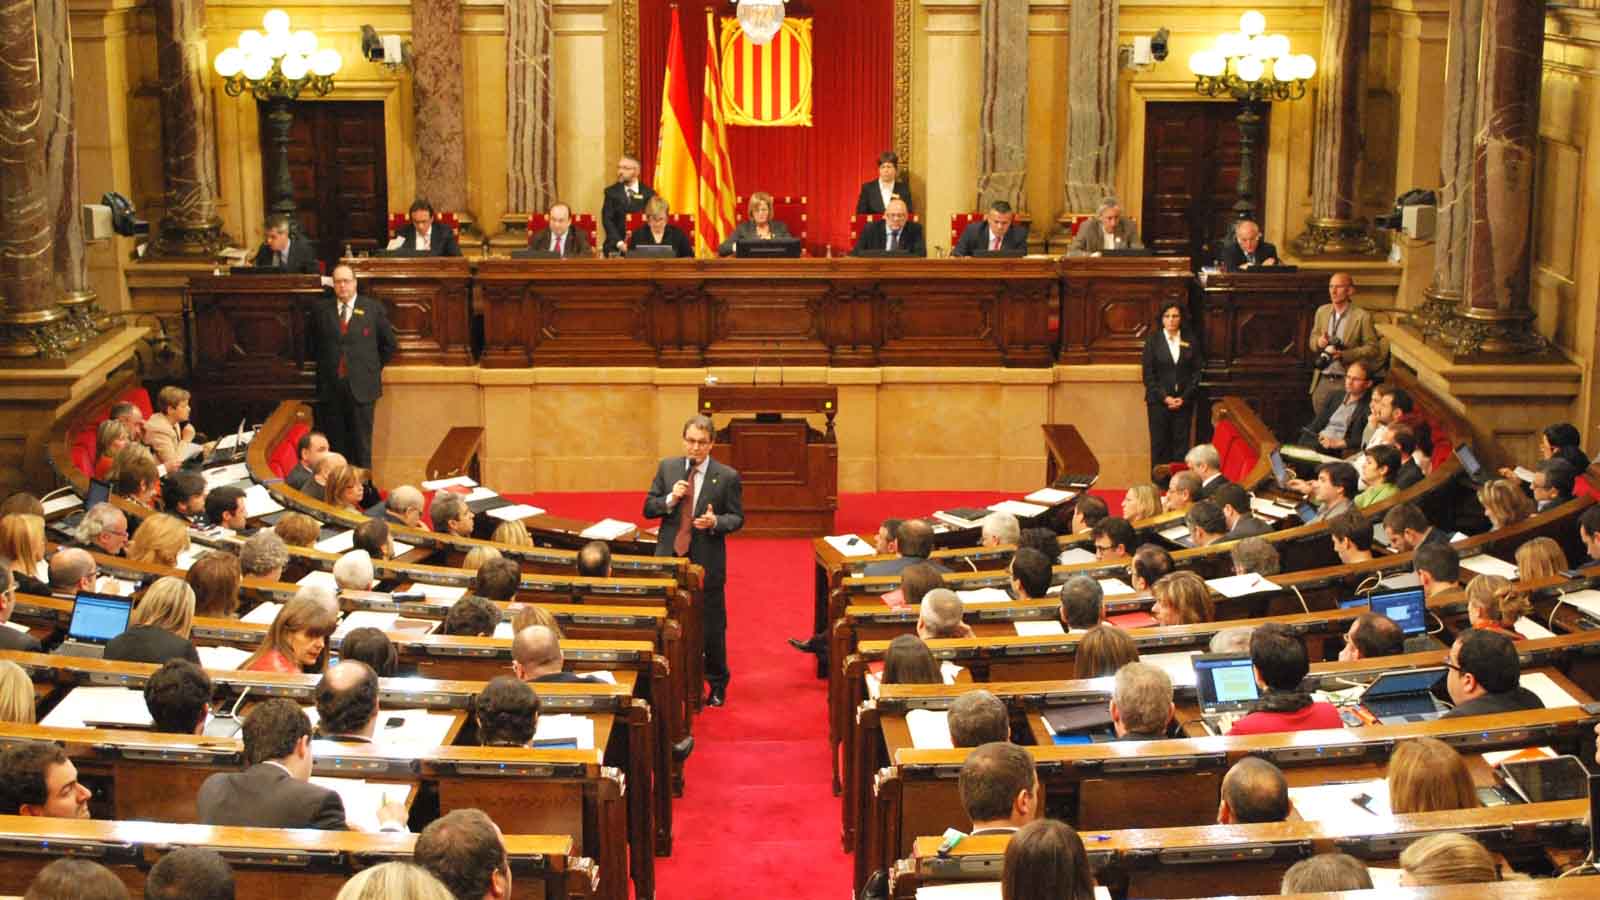 Mariano Rajoy convocó para ese día la sesión constitutiva tras conversarlo con diversos grupos políticos